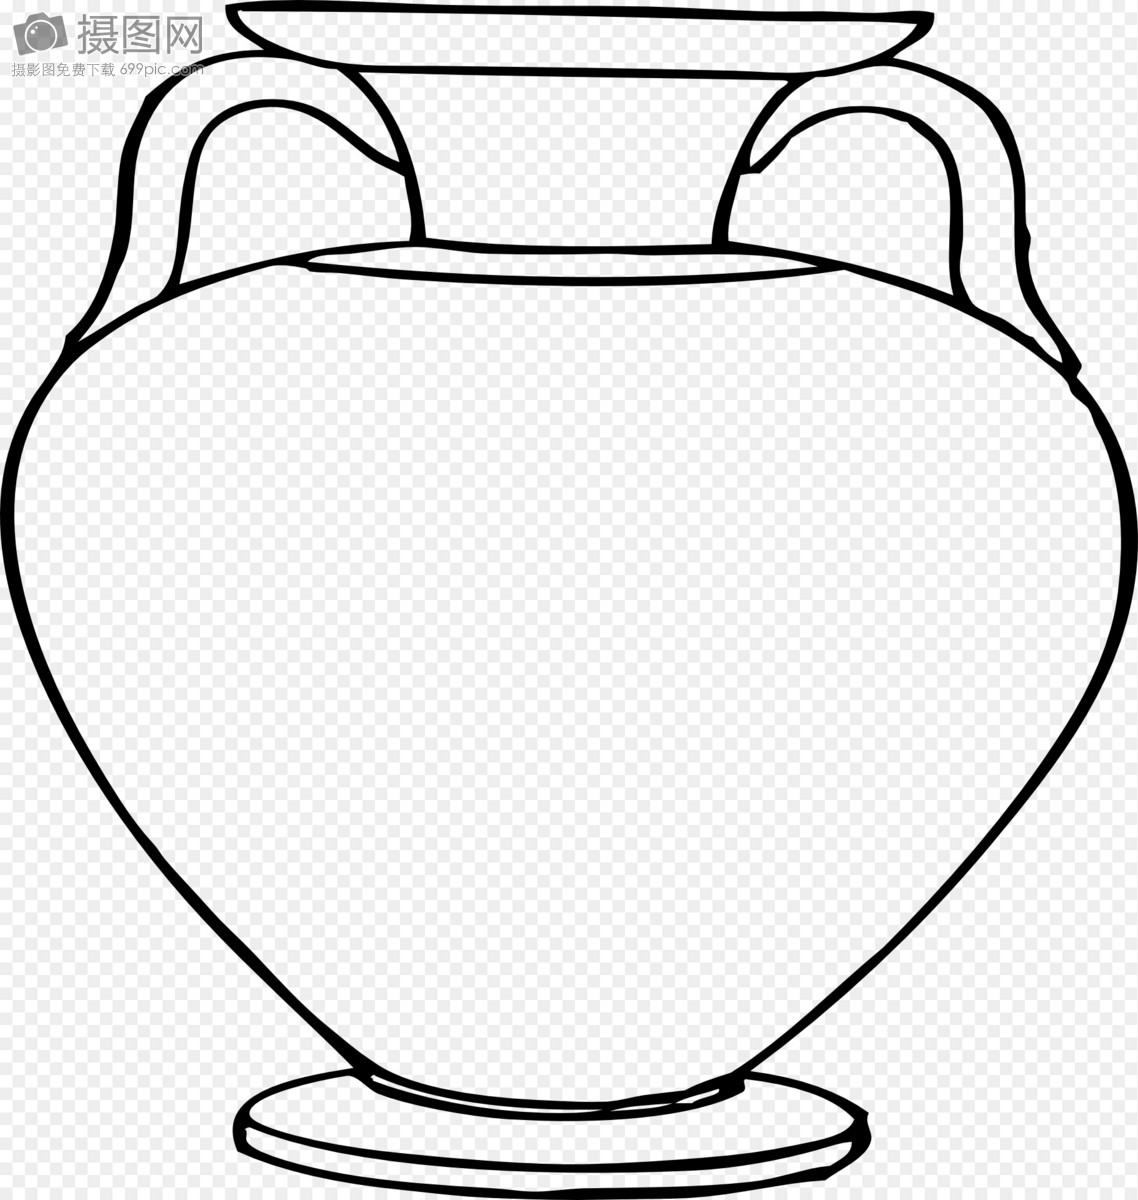 古代的陶艺品